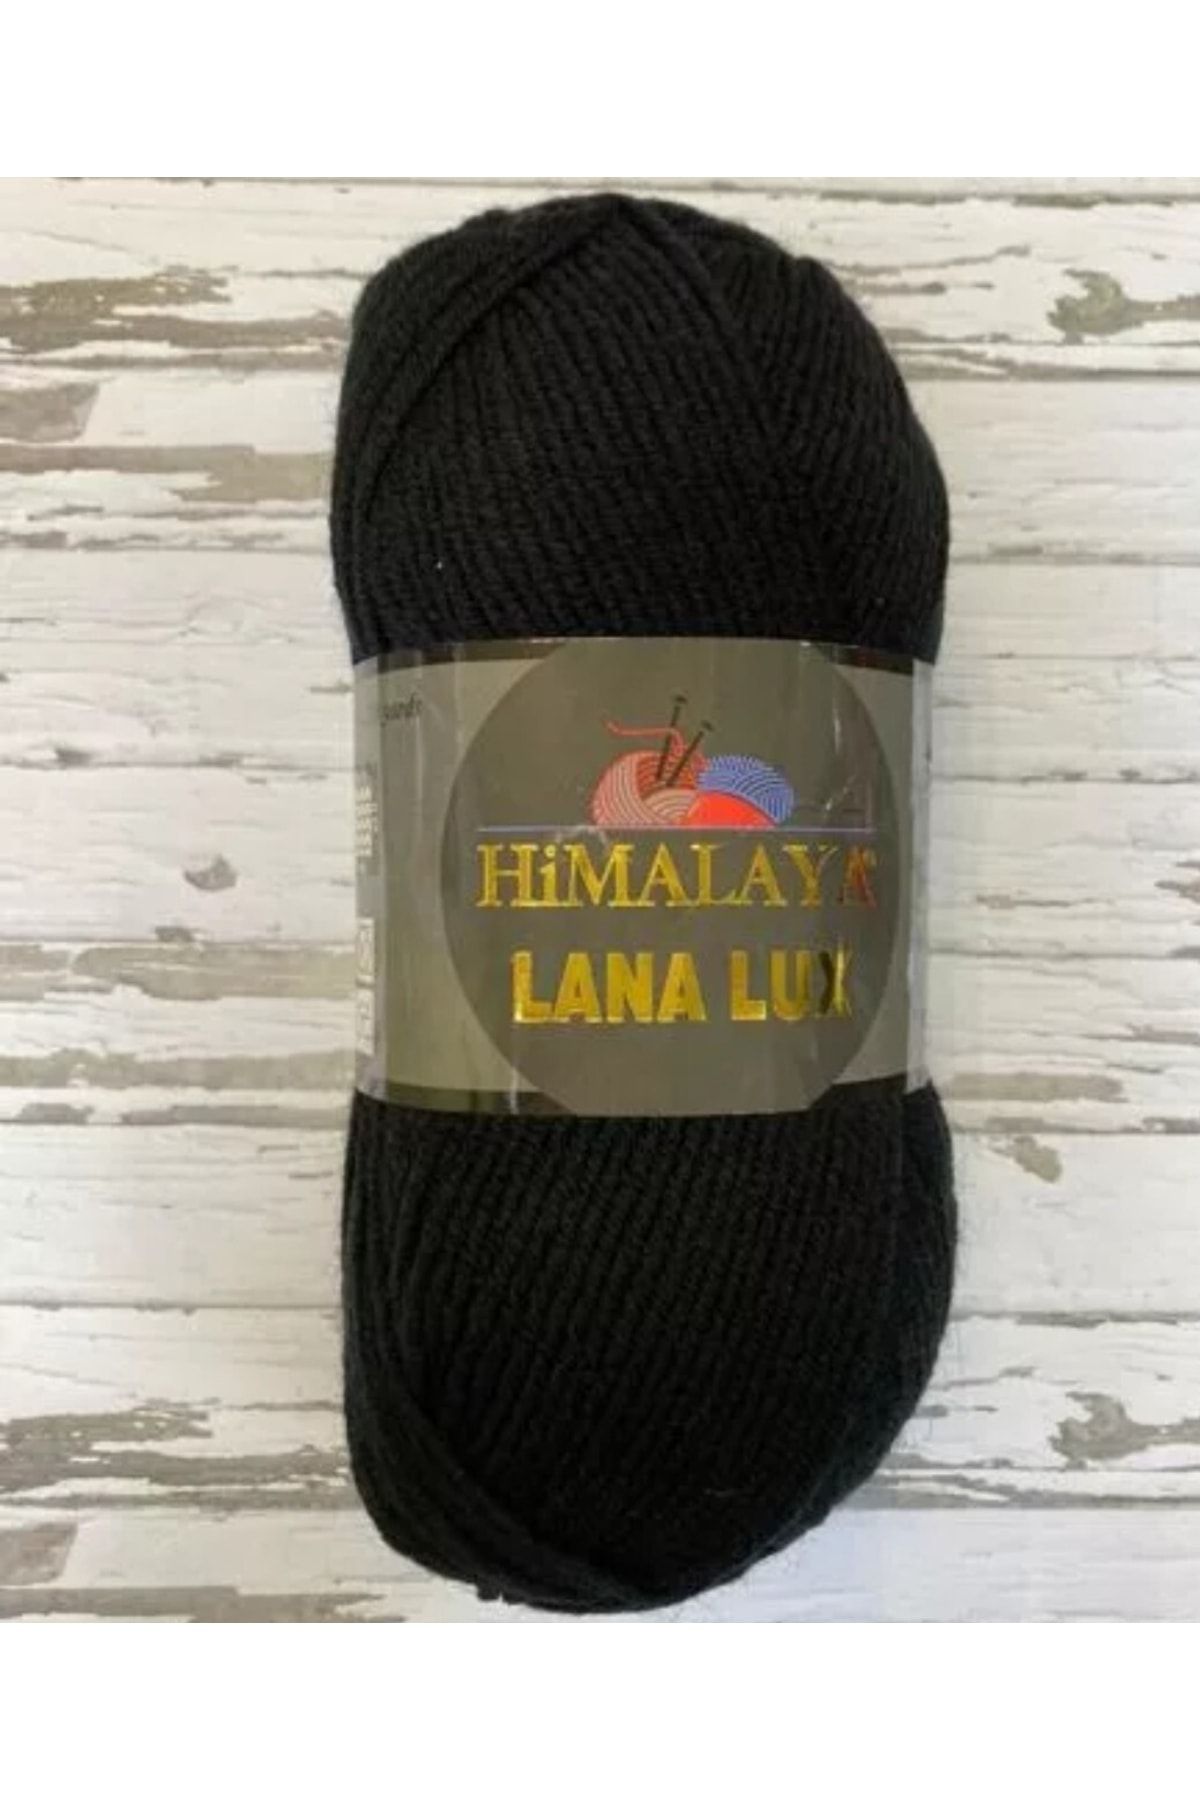 Himalaya Lana Lux 5 Li Paket Siyah